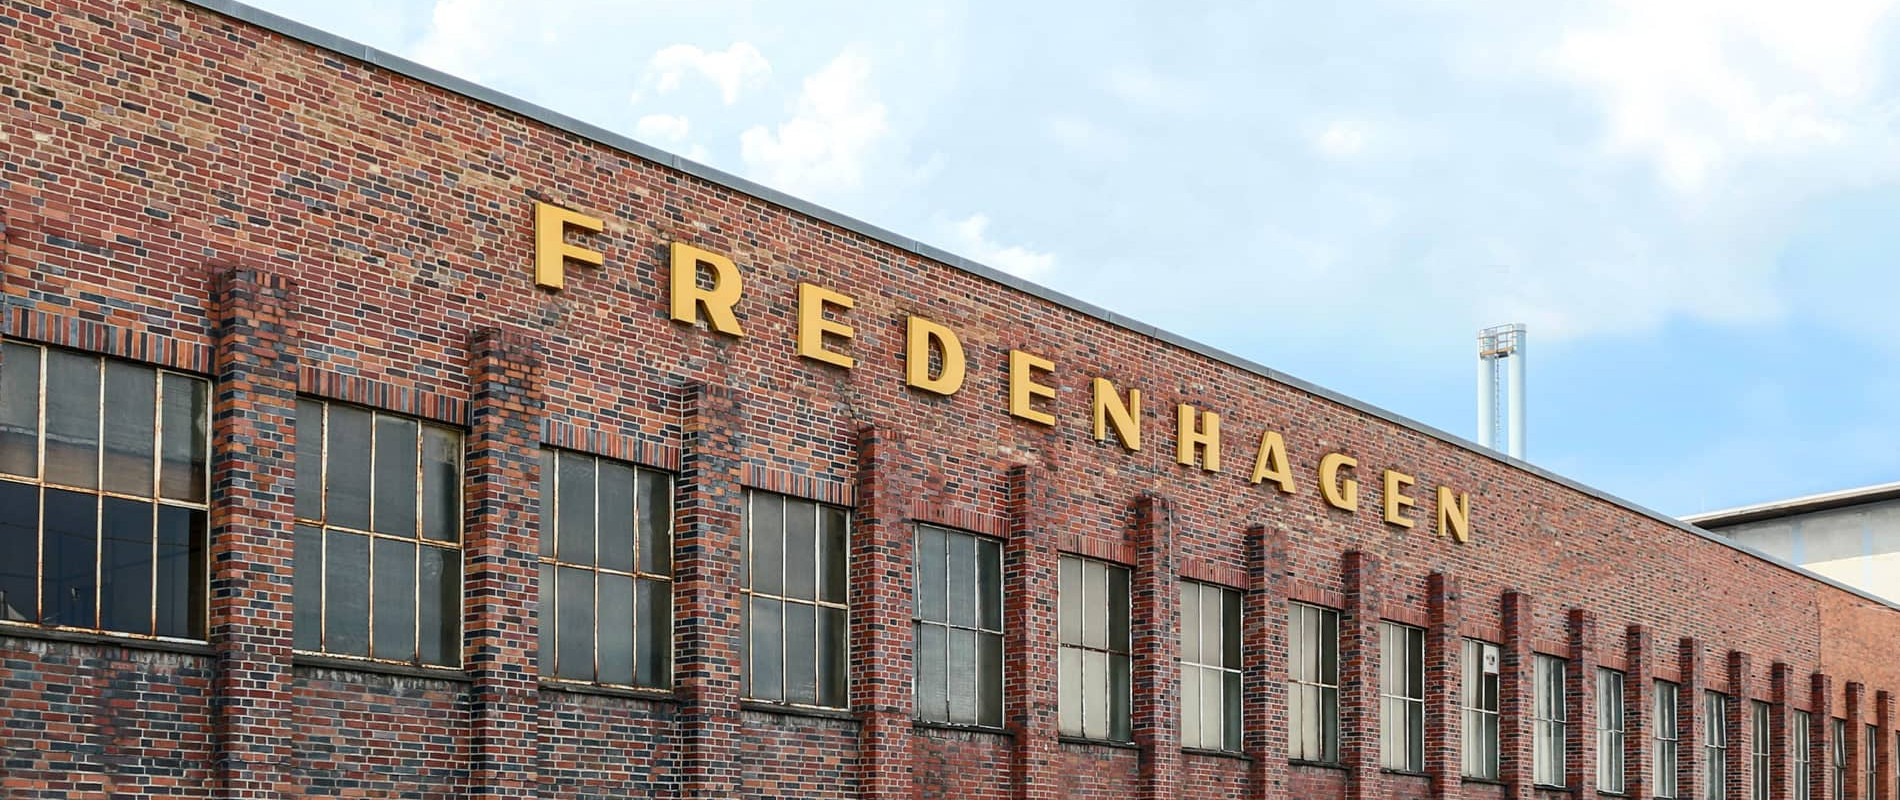 Location Manager in Frankfurt: Fredenhagen